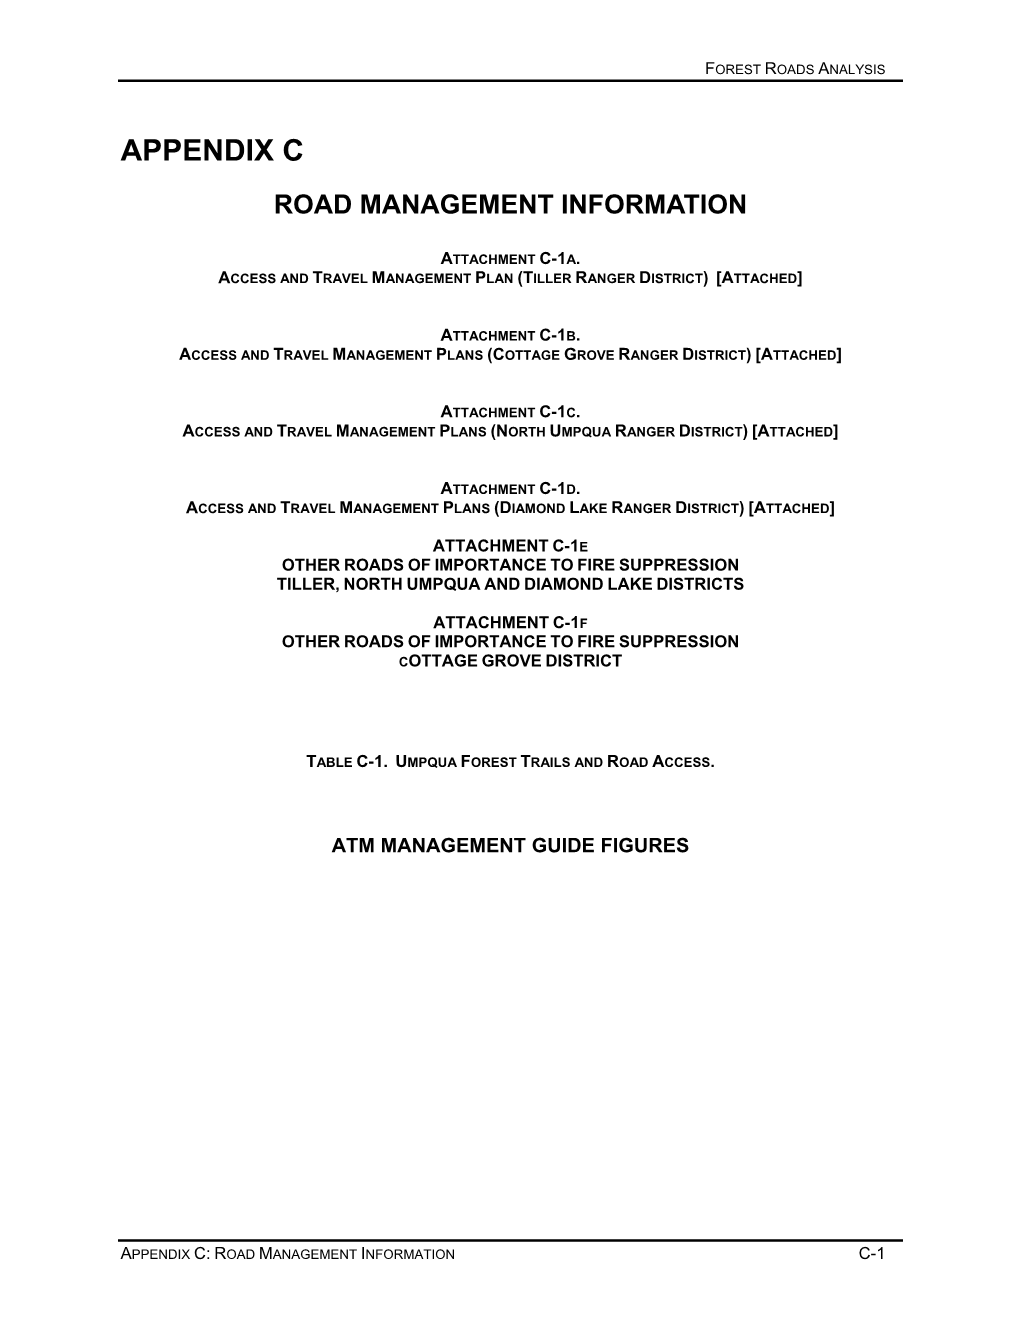 Appendix C Road Management Information